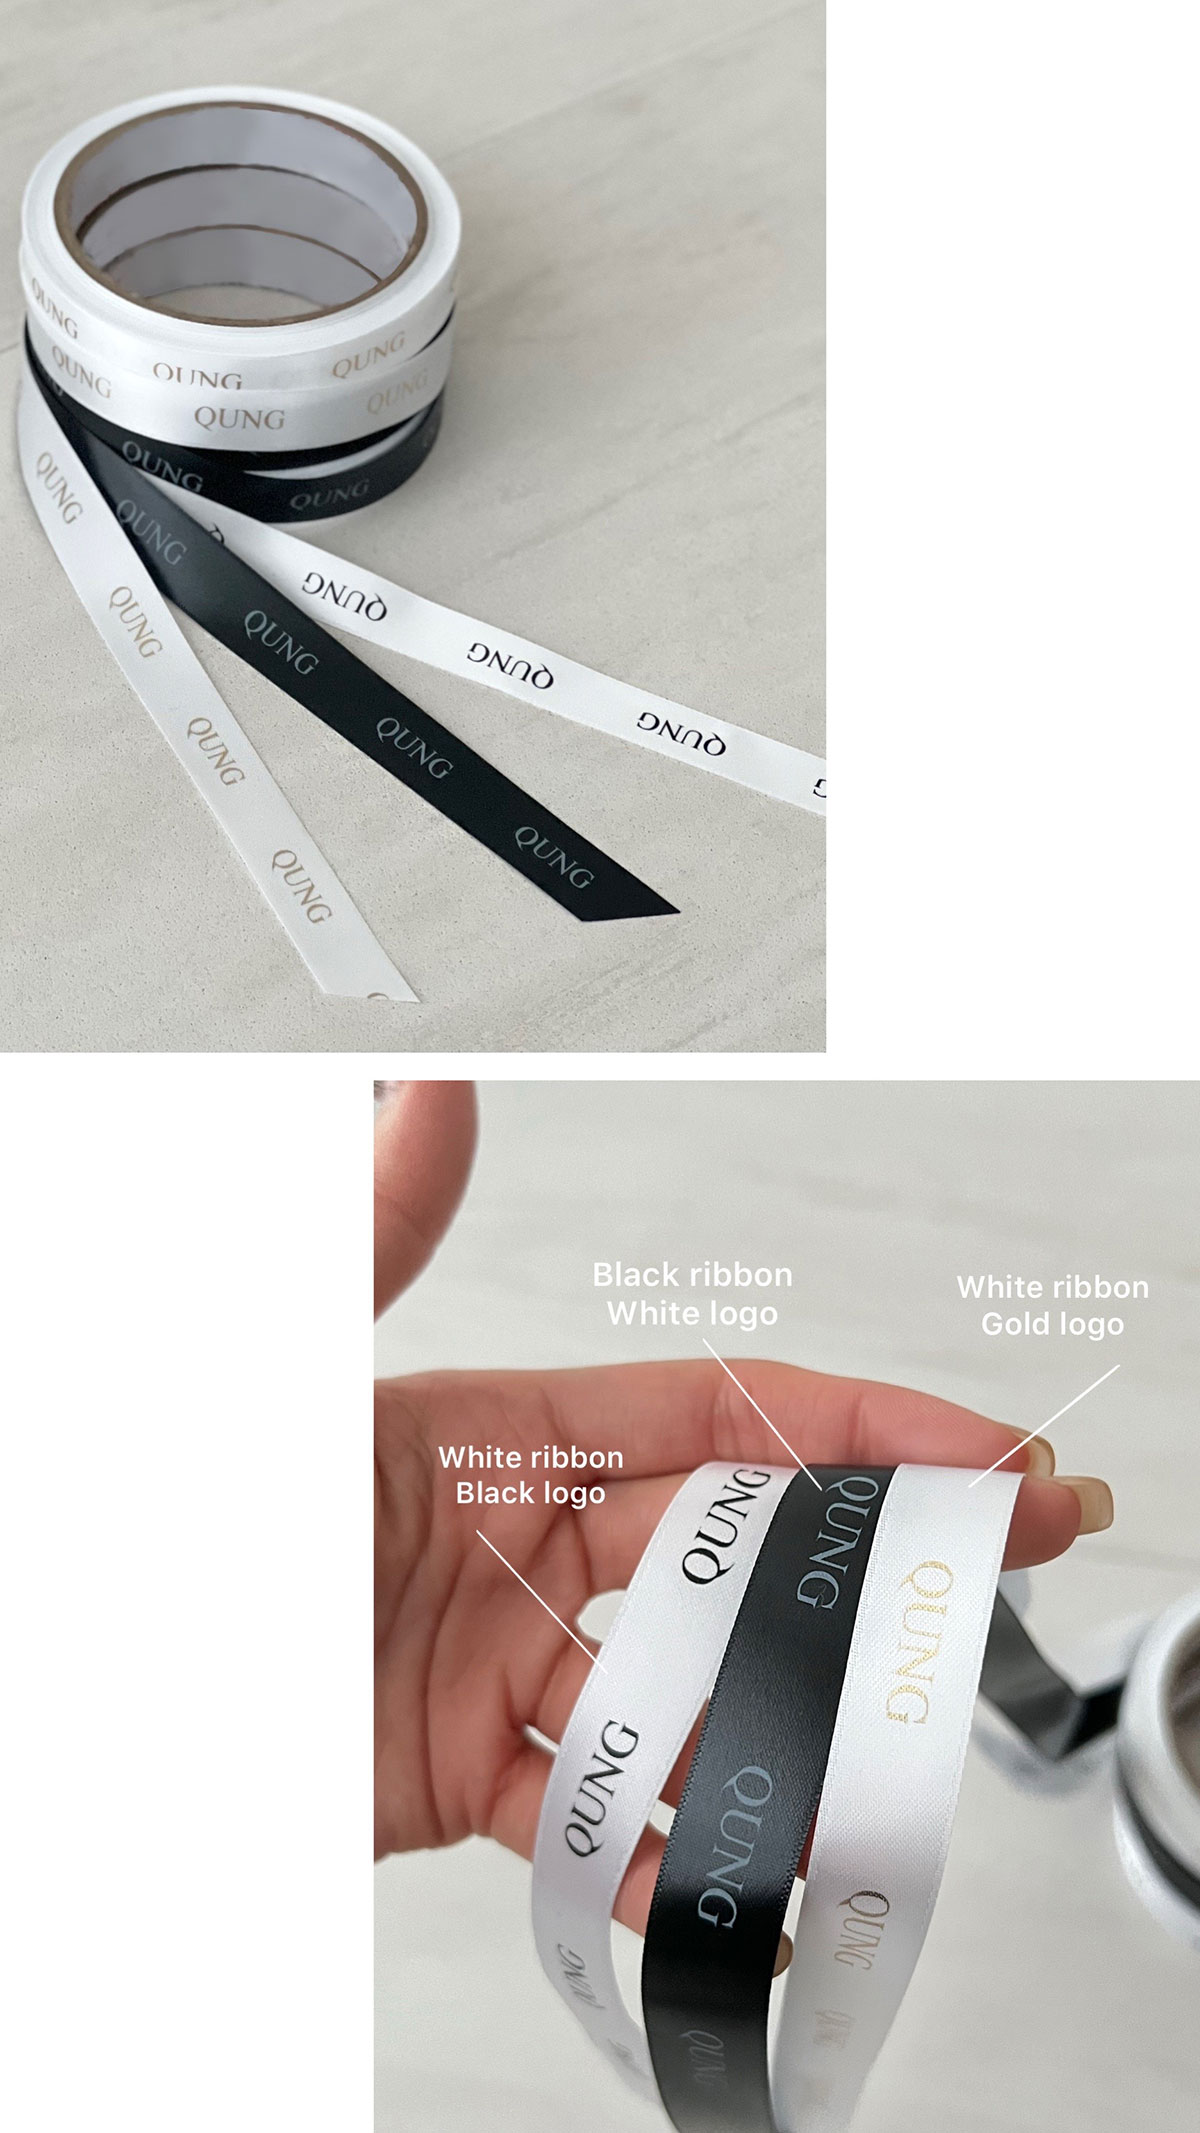 クン ギフトラッピングセット カラー:ブラックリボンxホワイトロゴ、ホワイトリボンxブラックロゴ、ホワイトリボンxゴールドロゴ